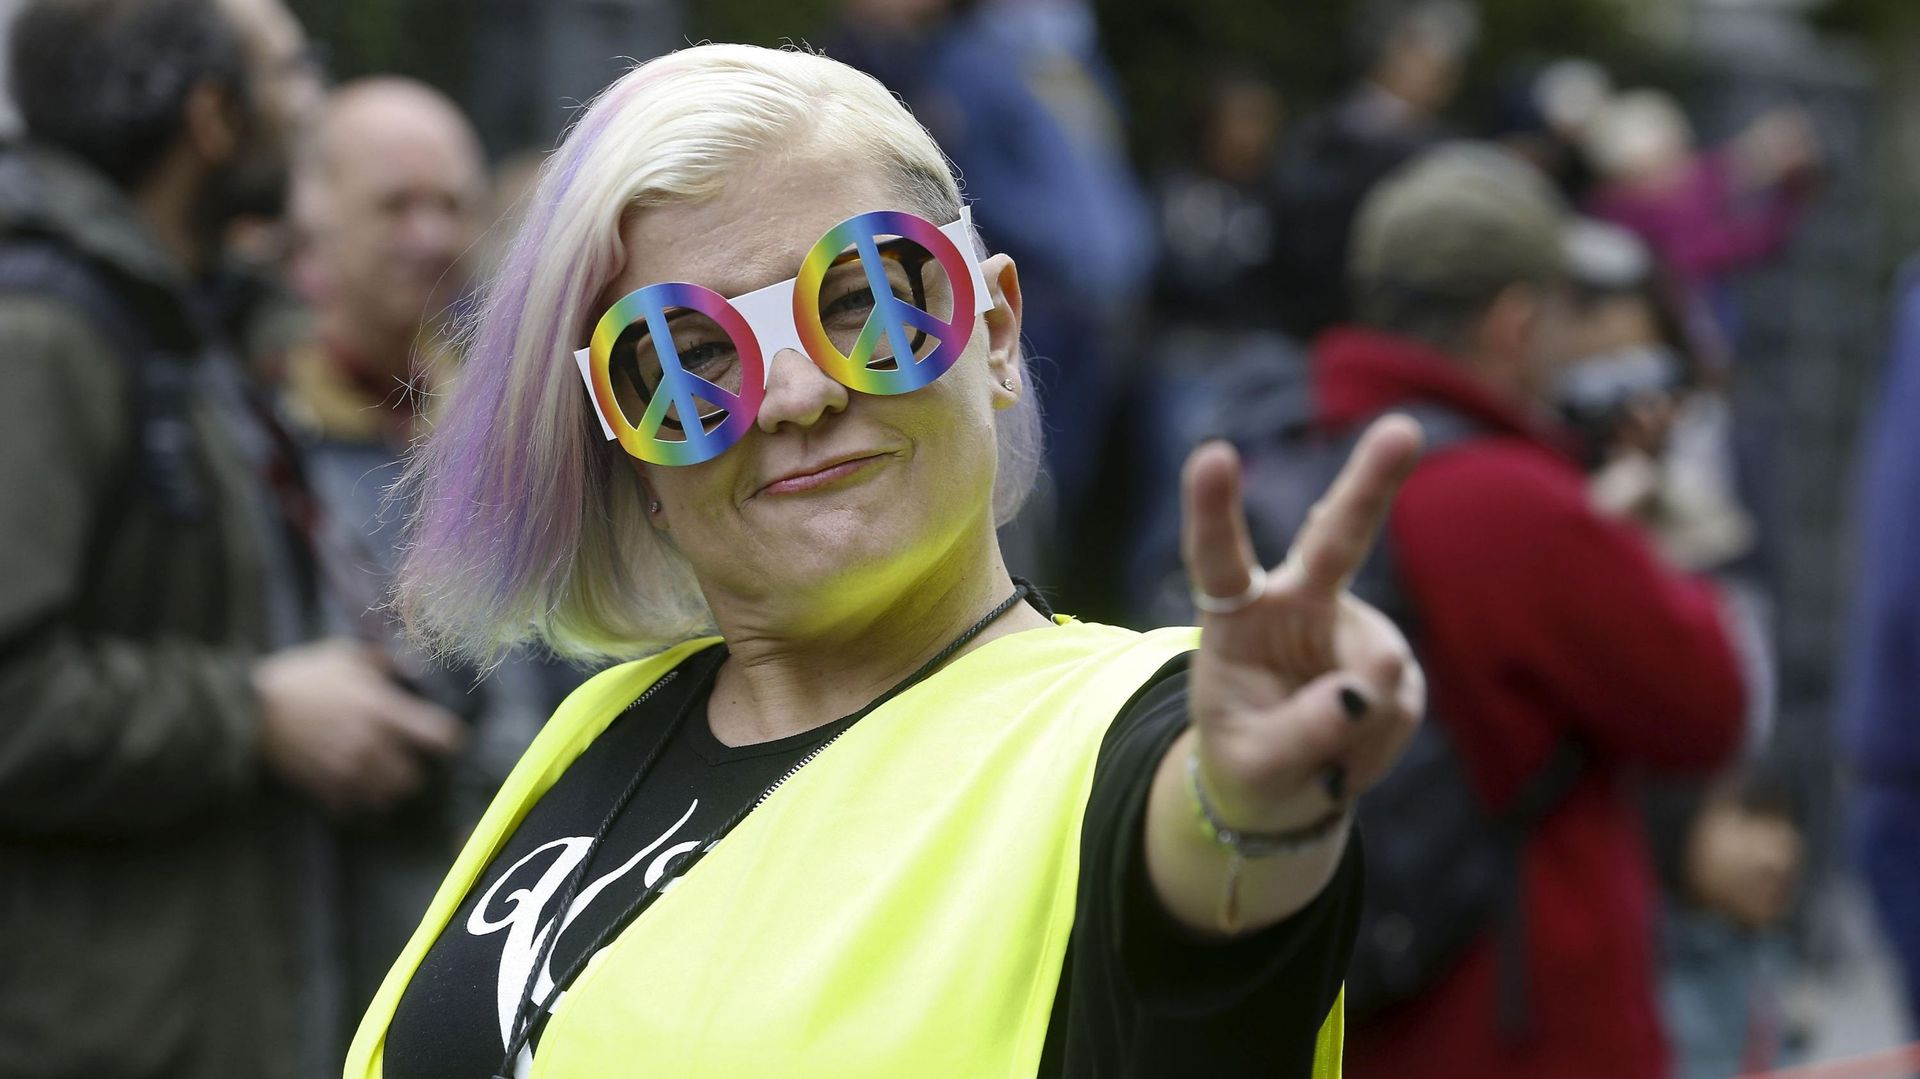 Bruxelles devient une destination incontournable pour les gays en Europe